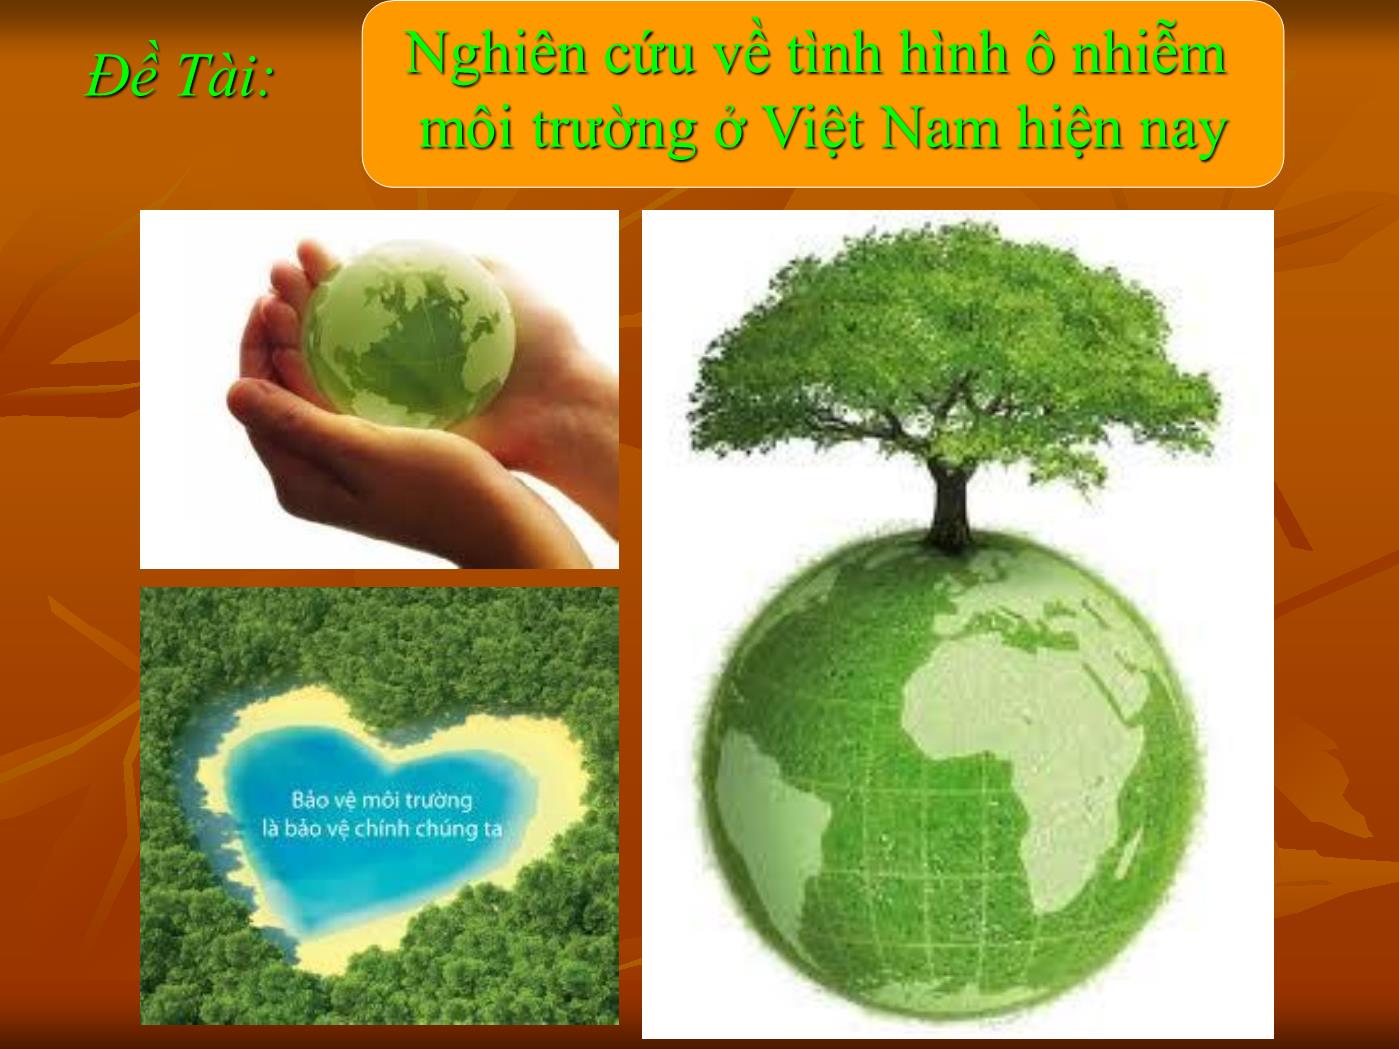 Đề tài Nghiên cứu về tình hình ô nhiễm môi trường ở Việt Nam hiện nay trang 2